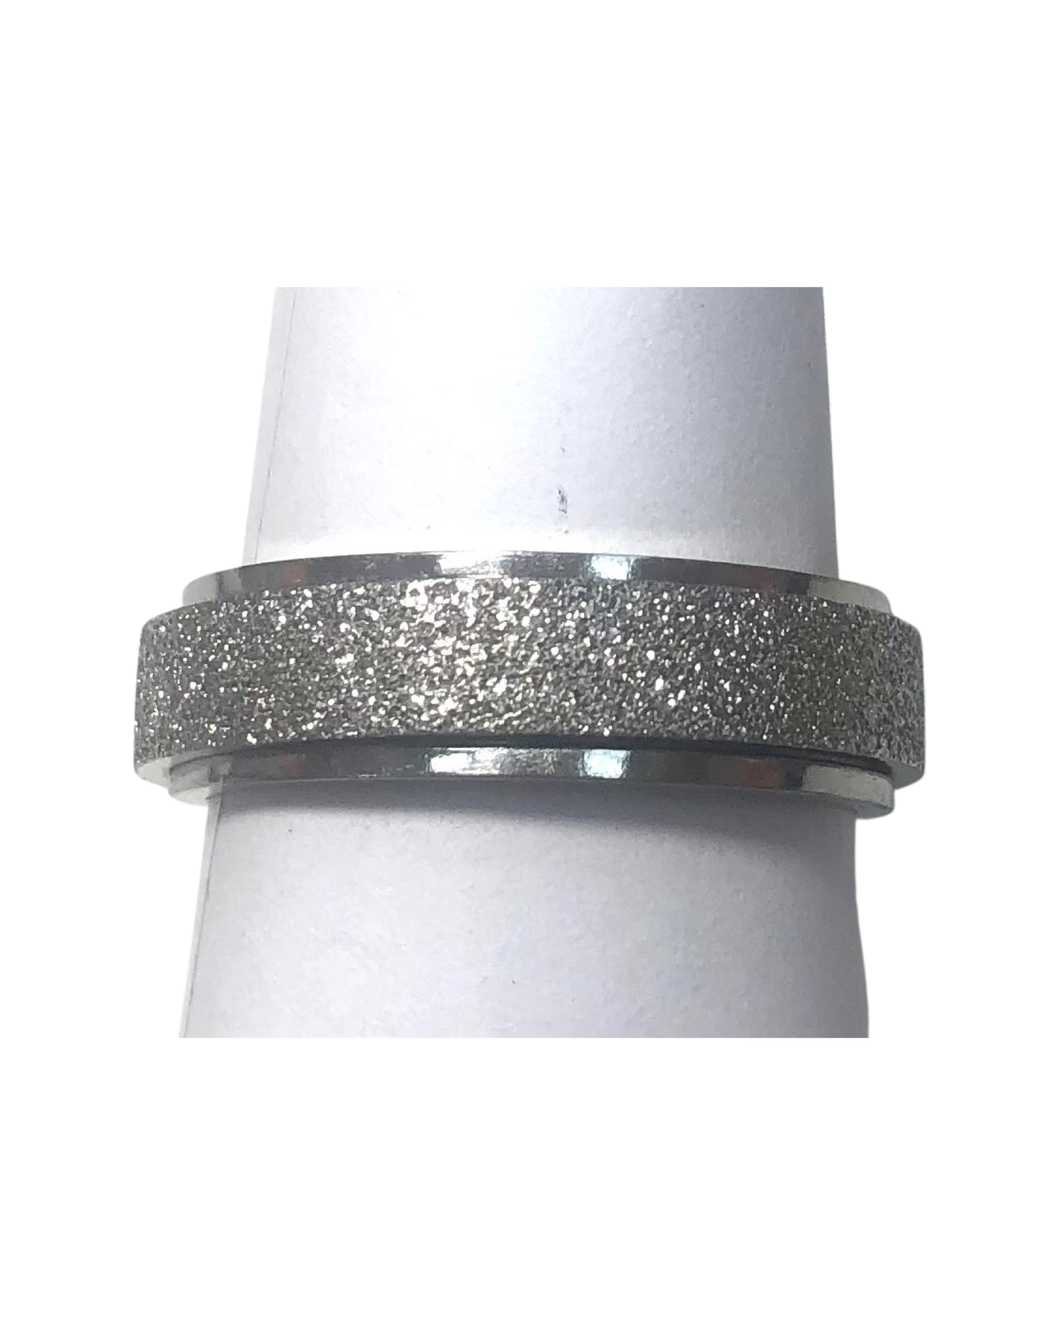 Fidget ring - silver glitter spinner.   (FR13)